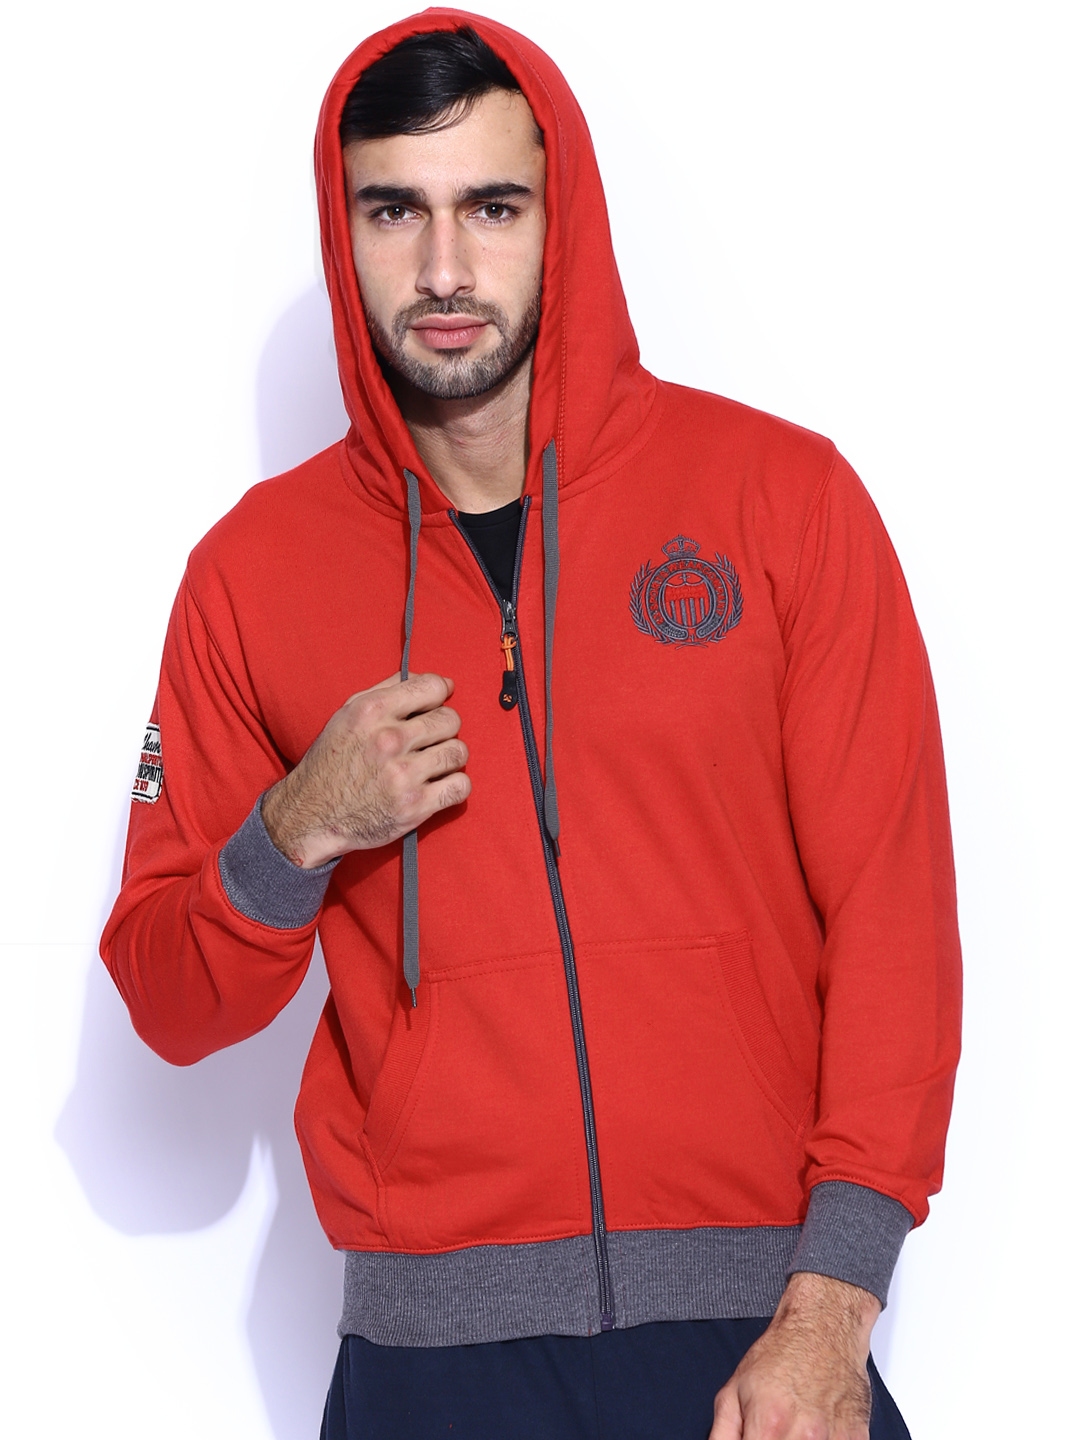 Buy Sports52 Wear Red Hooded Sweatshirt - Sweatshirts for Men 1010261 ...